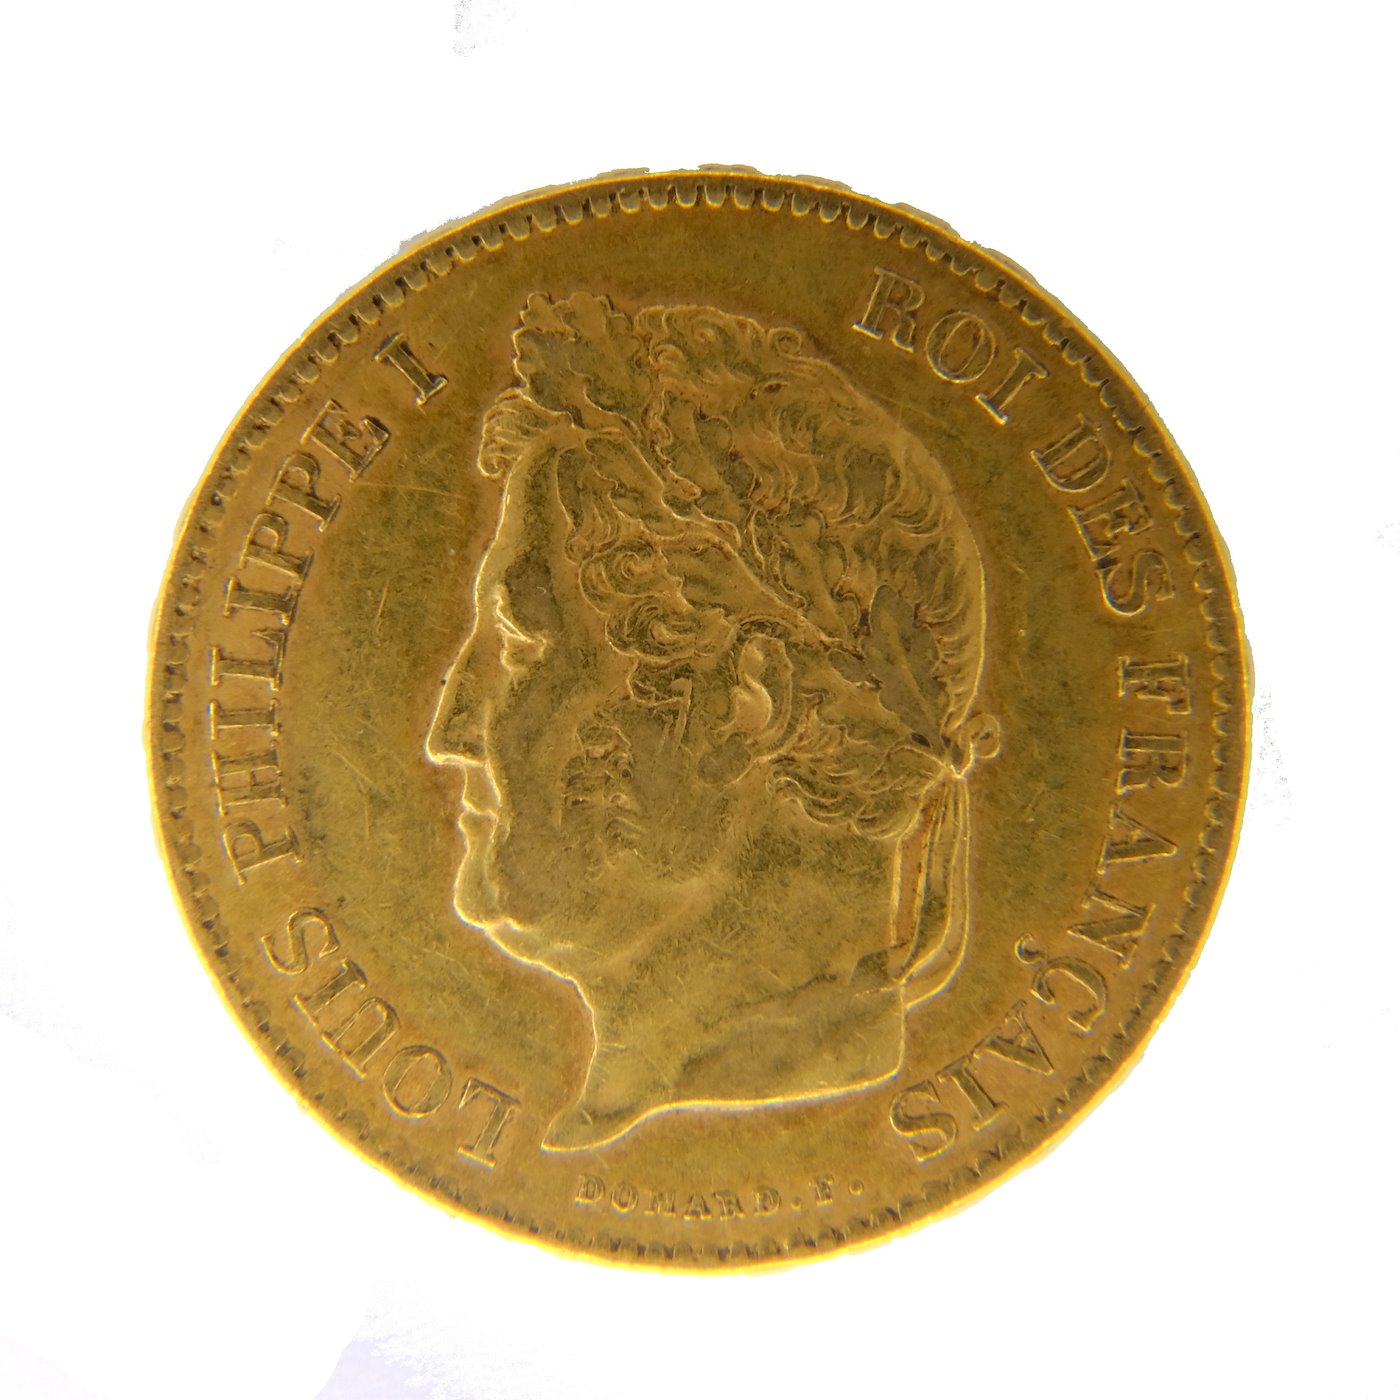 .. - Francie 40 frank 1834 A král Louis Philippe I. znak kotvy, zlato 900/1000, hmotnost hrubá 12,90g.